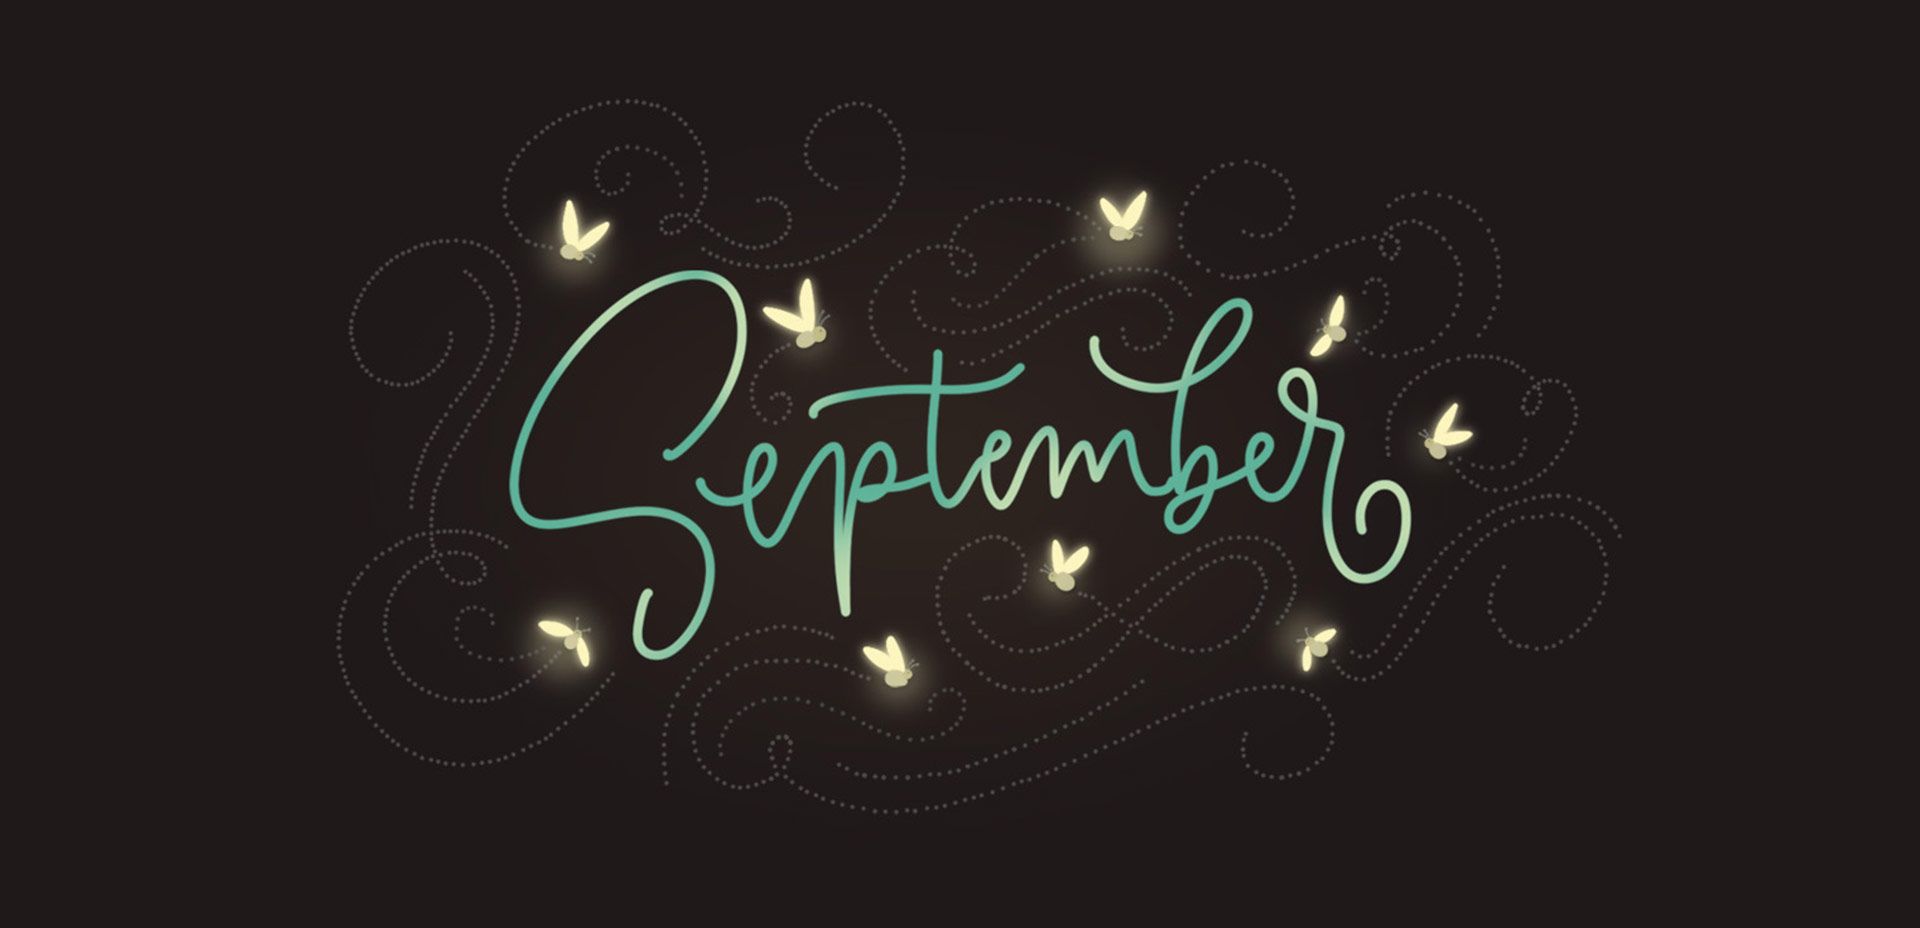 September, a month of fireflies - September